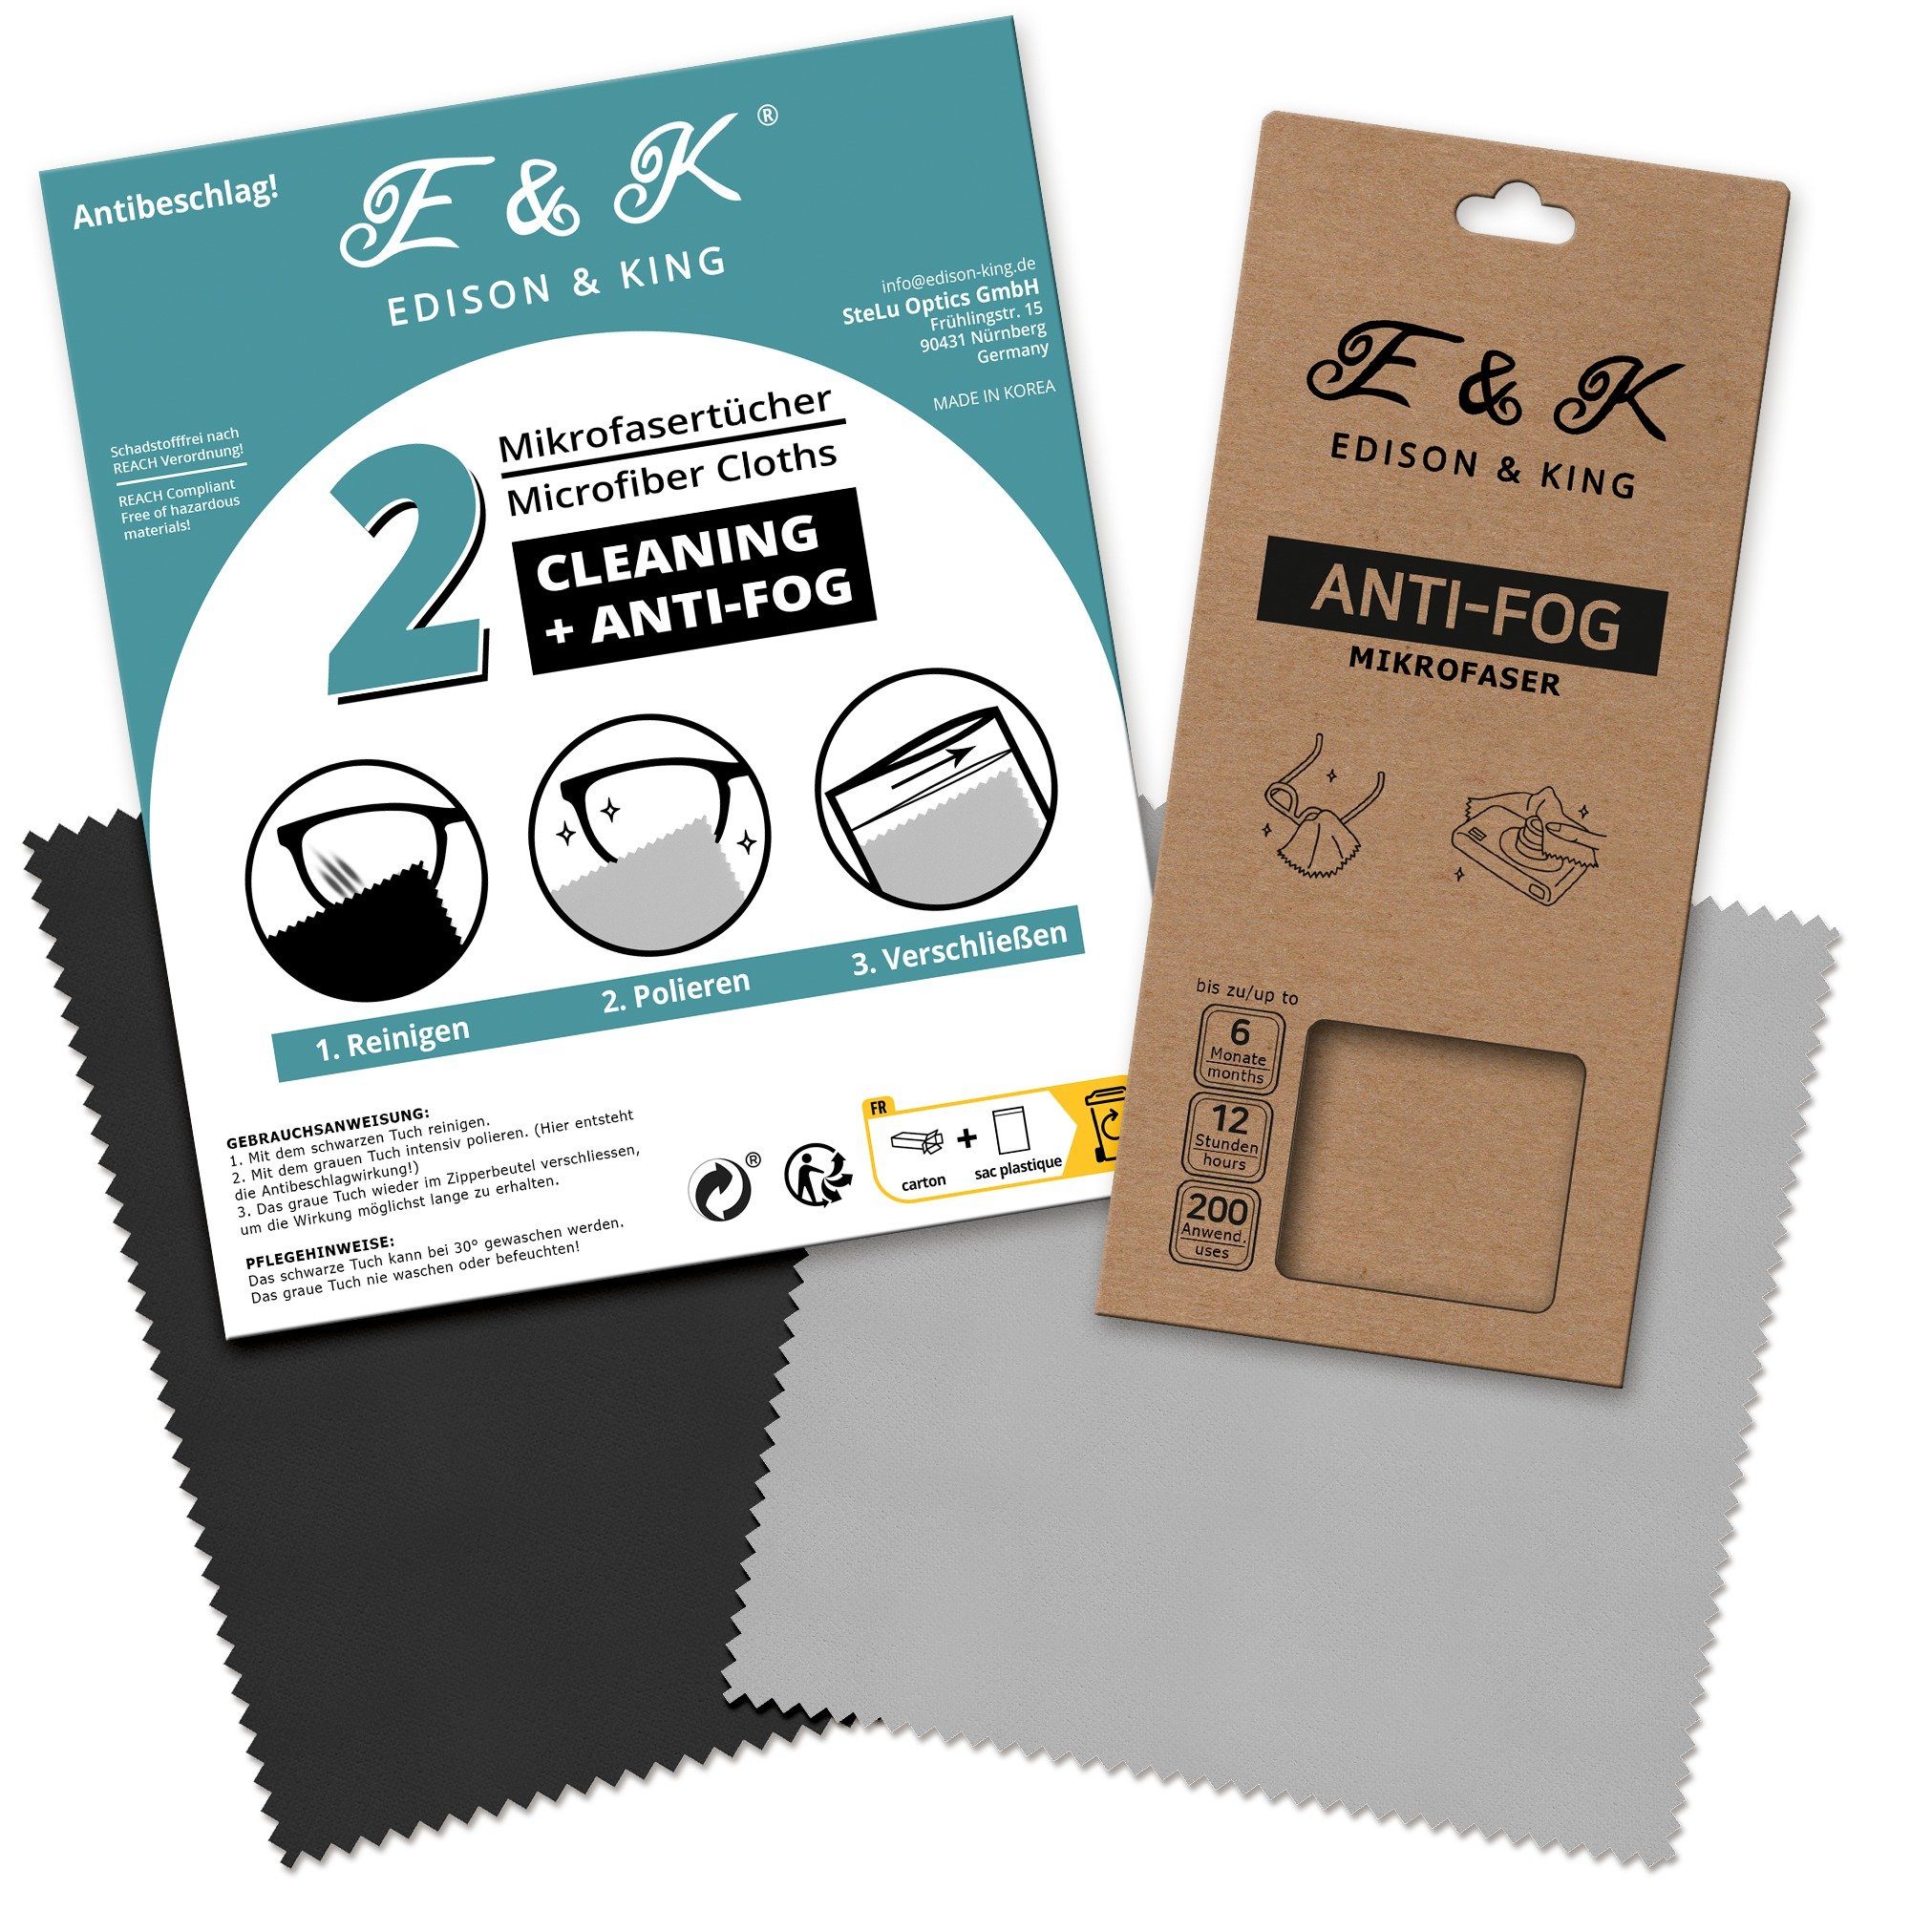 Edison & King Brillenputztücher Set für und Anti-Fog) Antibeschlag-Set, Antibeschlag (Microfaser, und Reinigen Mikrofasertuch Reinigungs